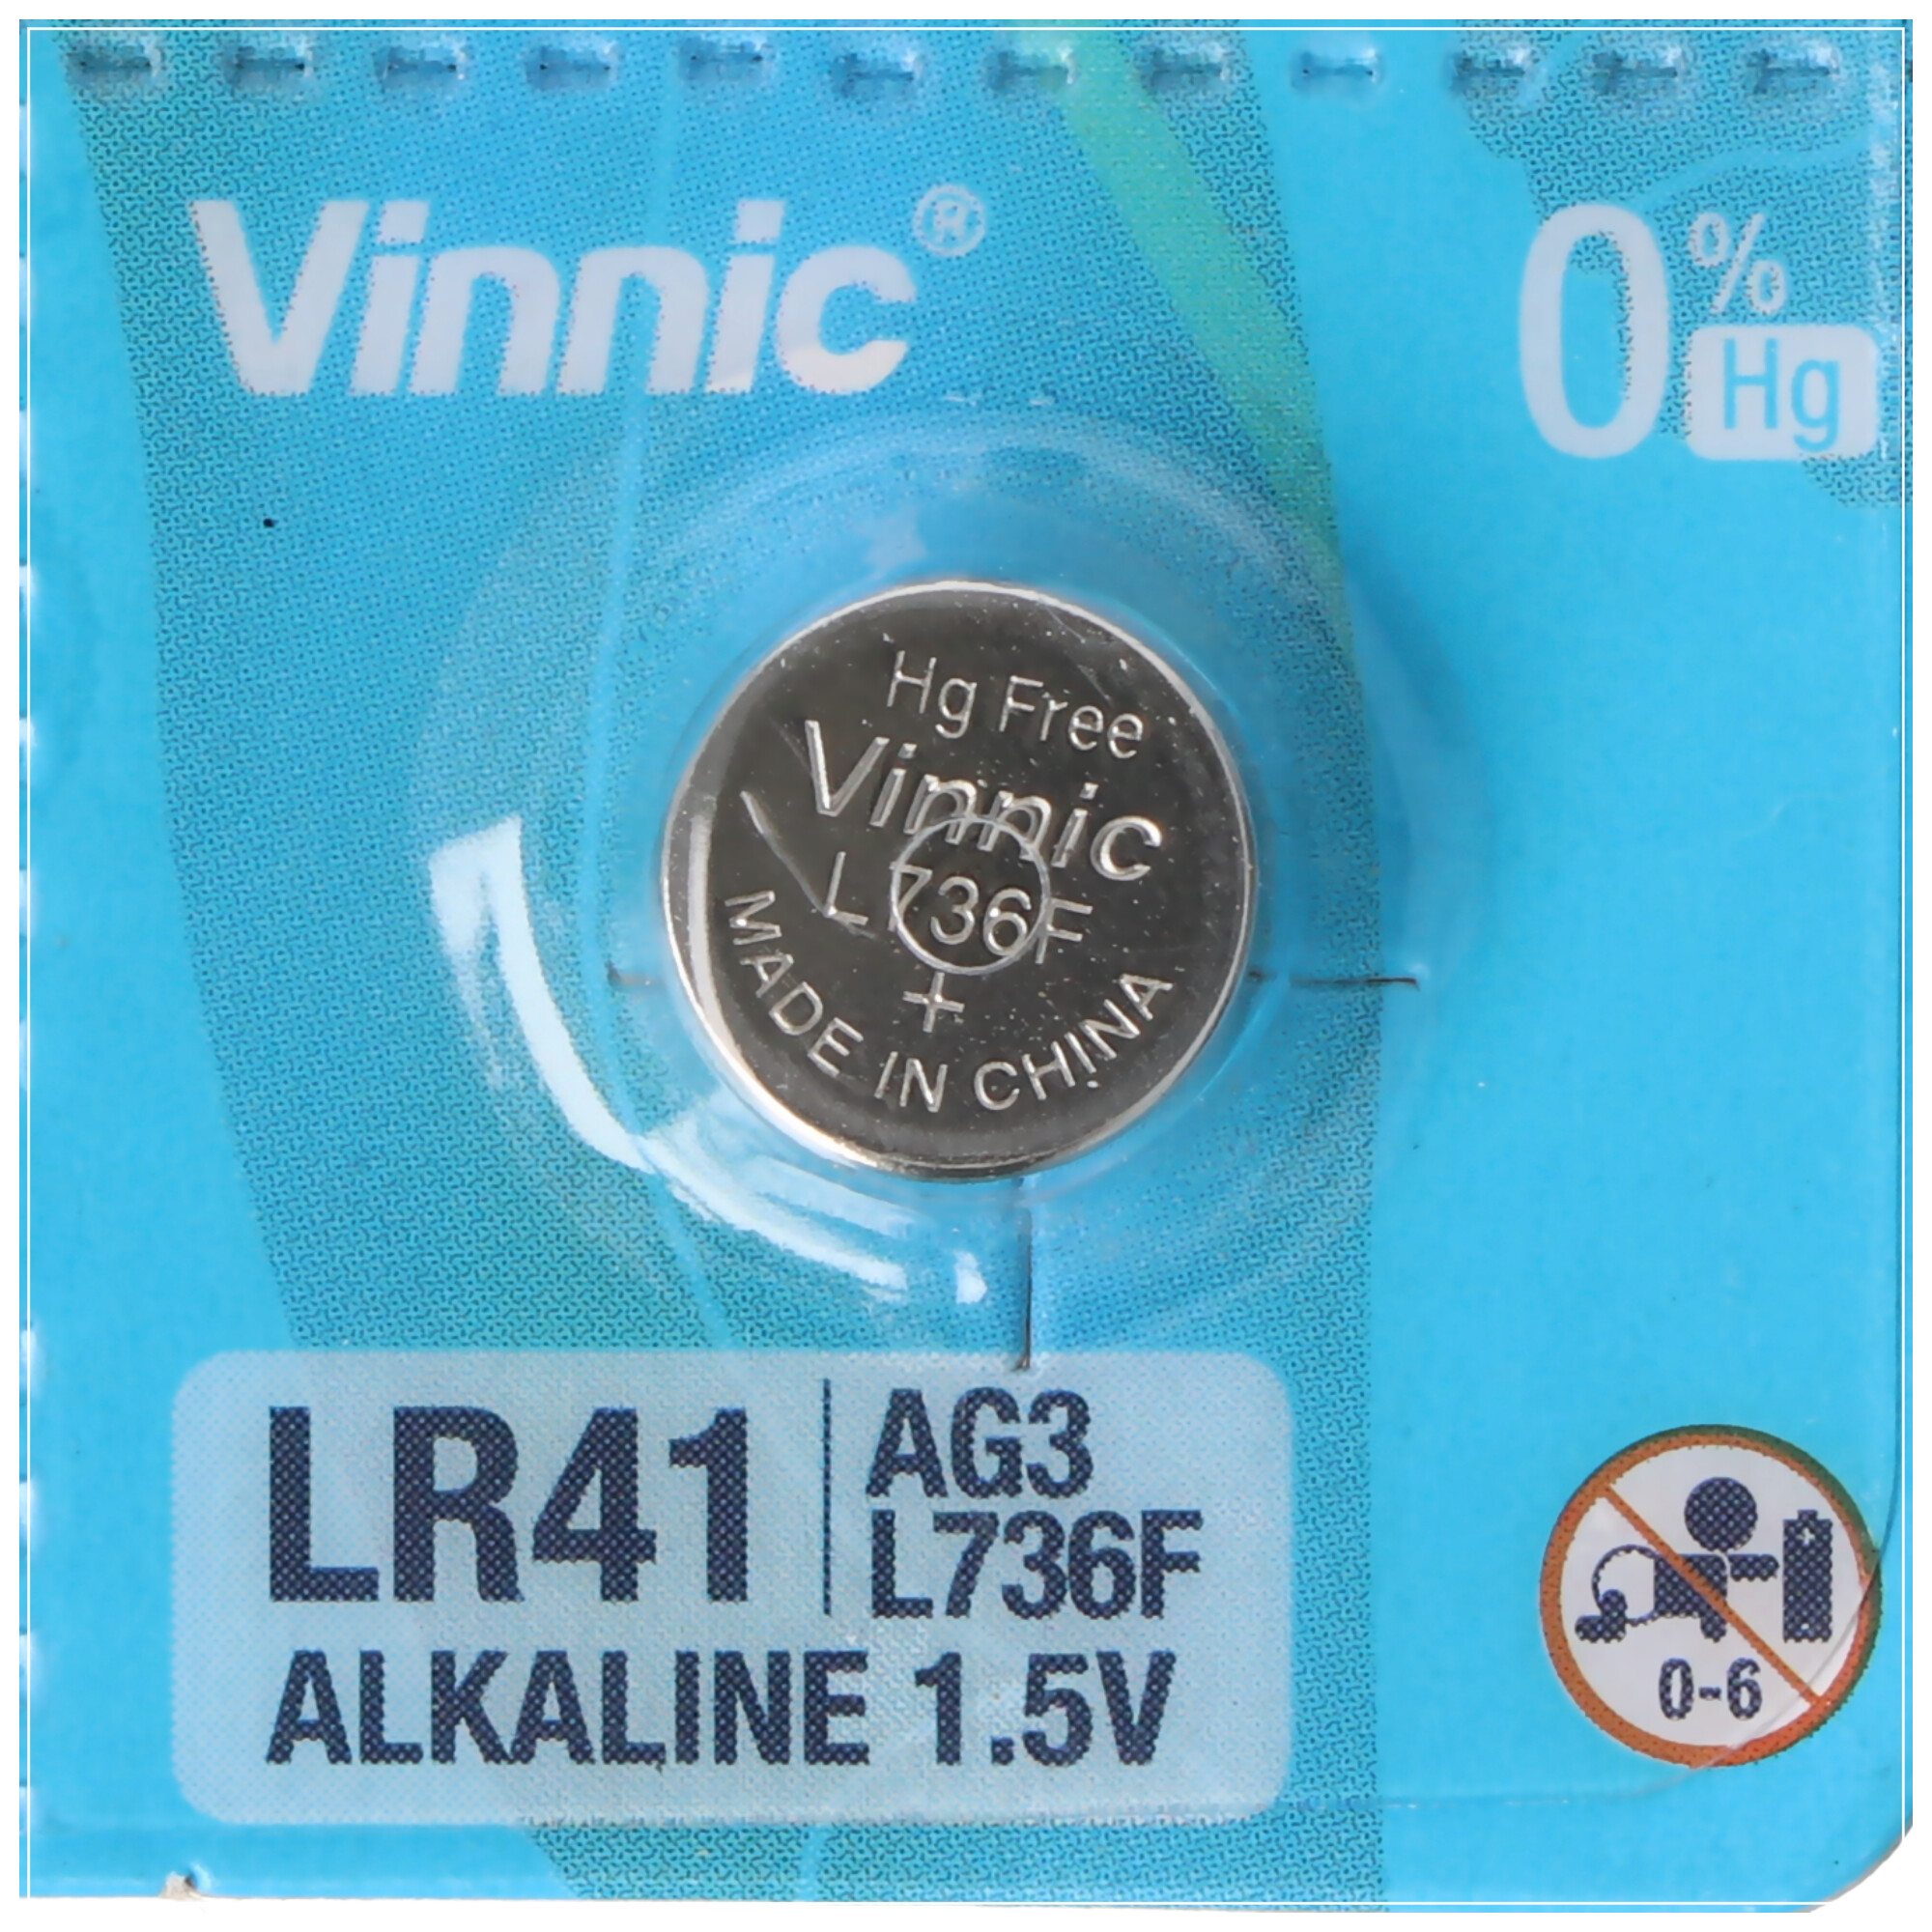 10 piles alcalines AG3, piles alcalines LR41 L736F, AG3, L736 F